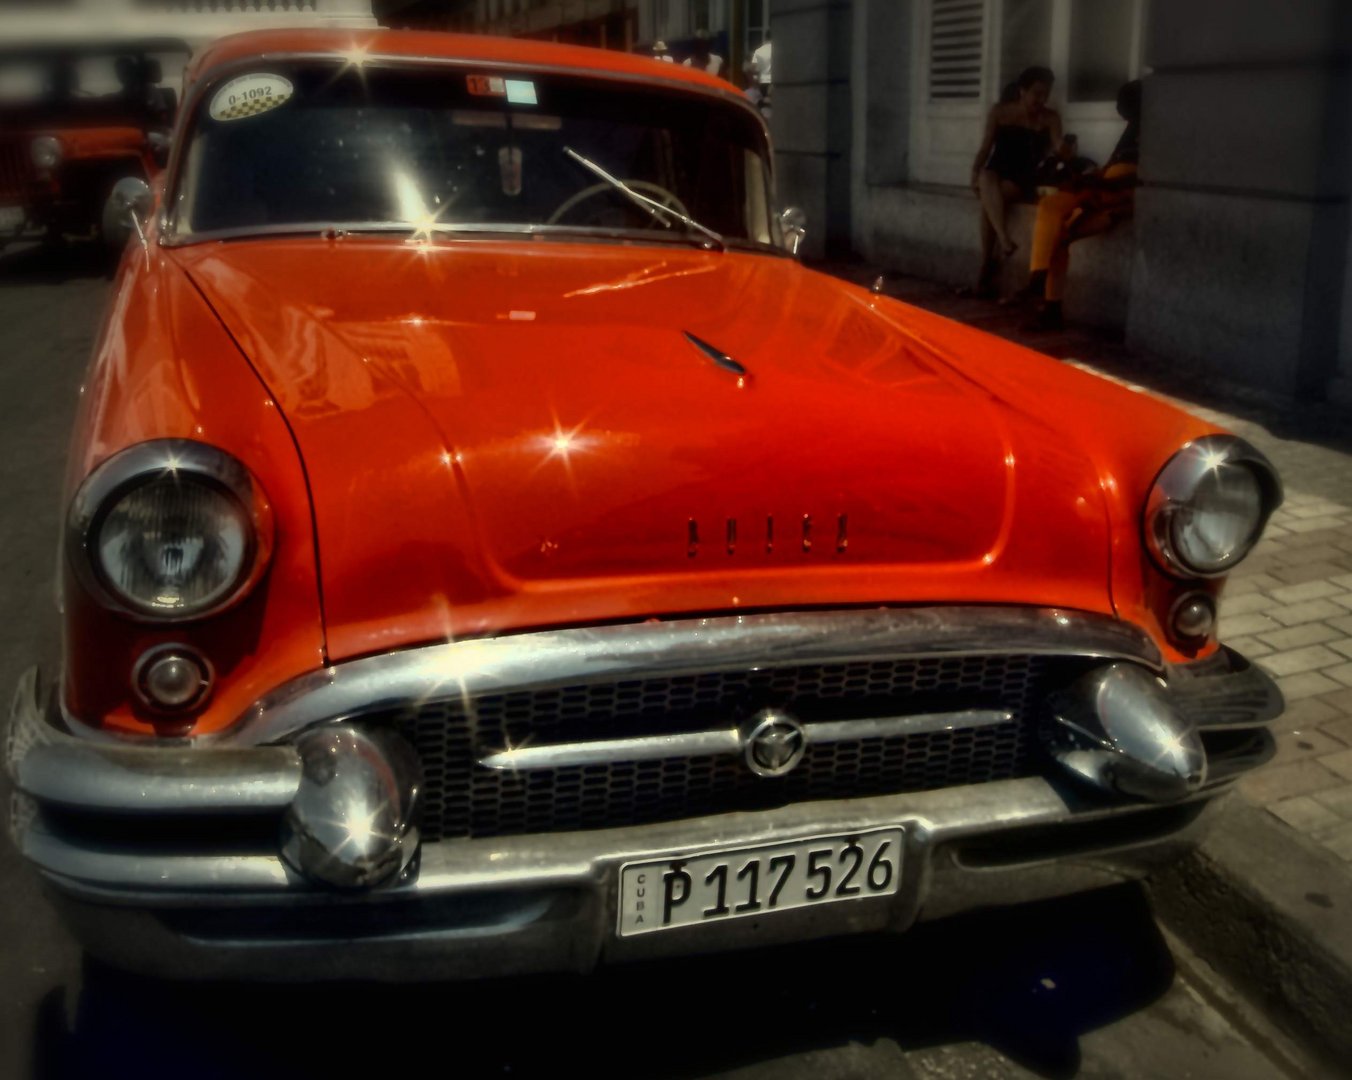 Cuban car 11